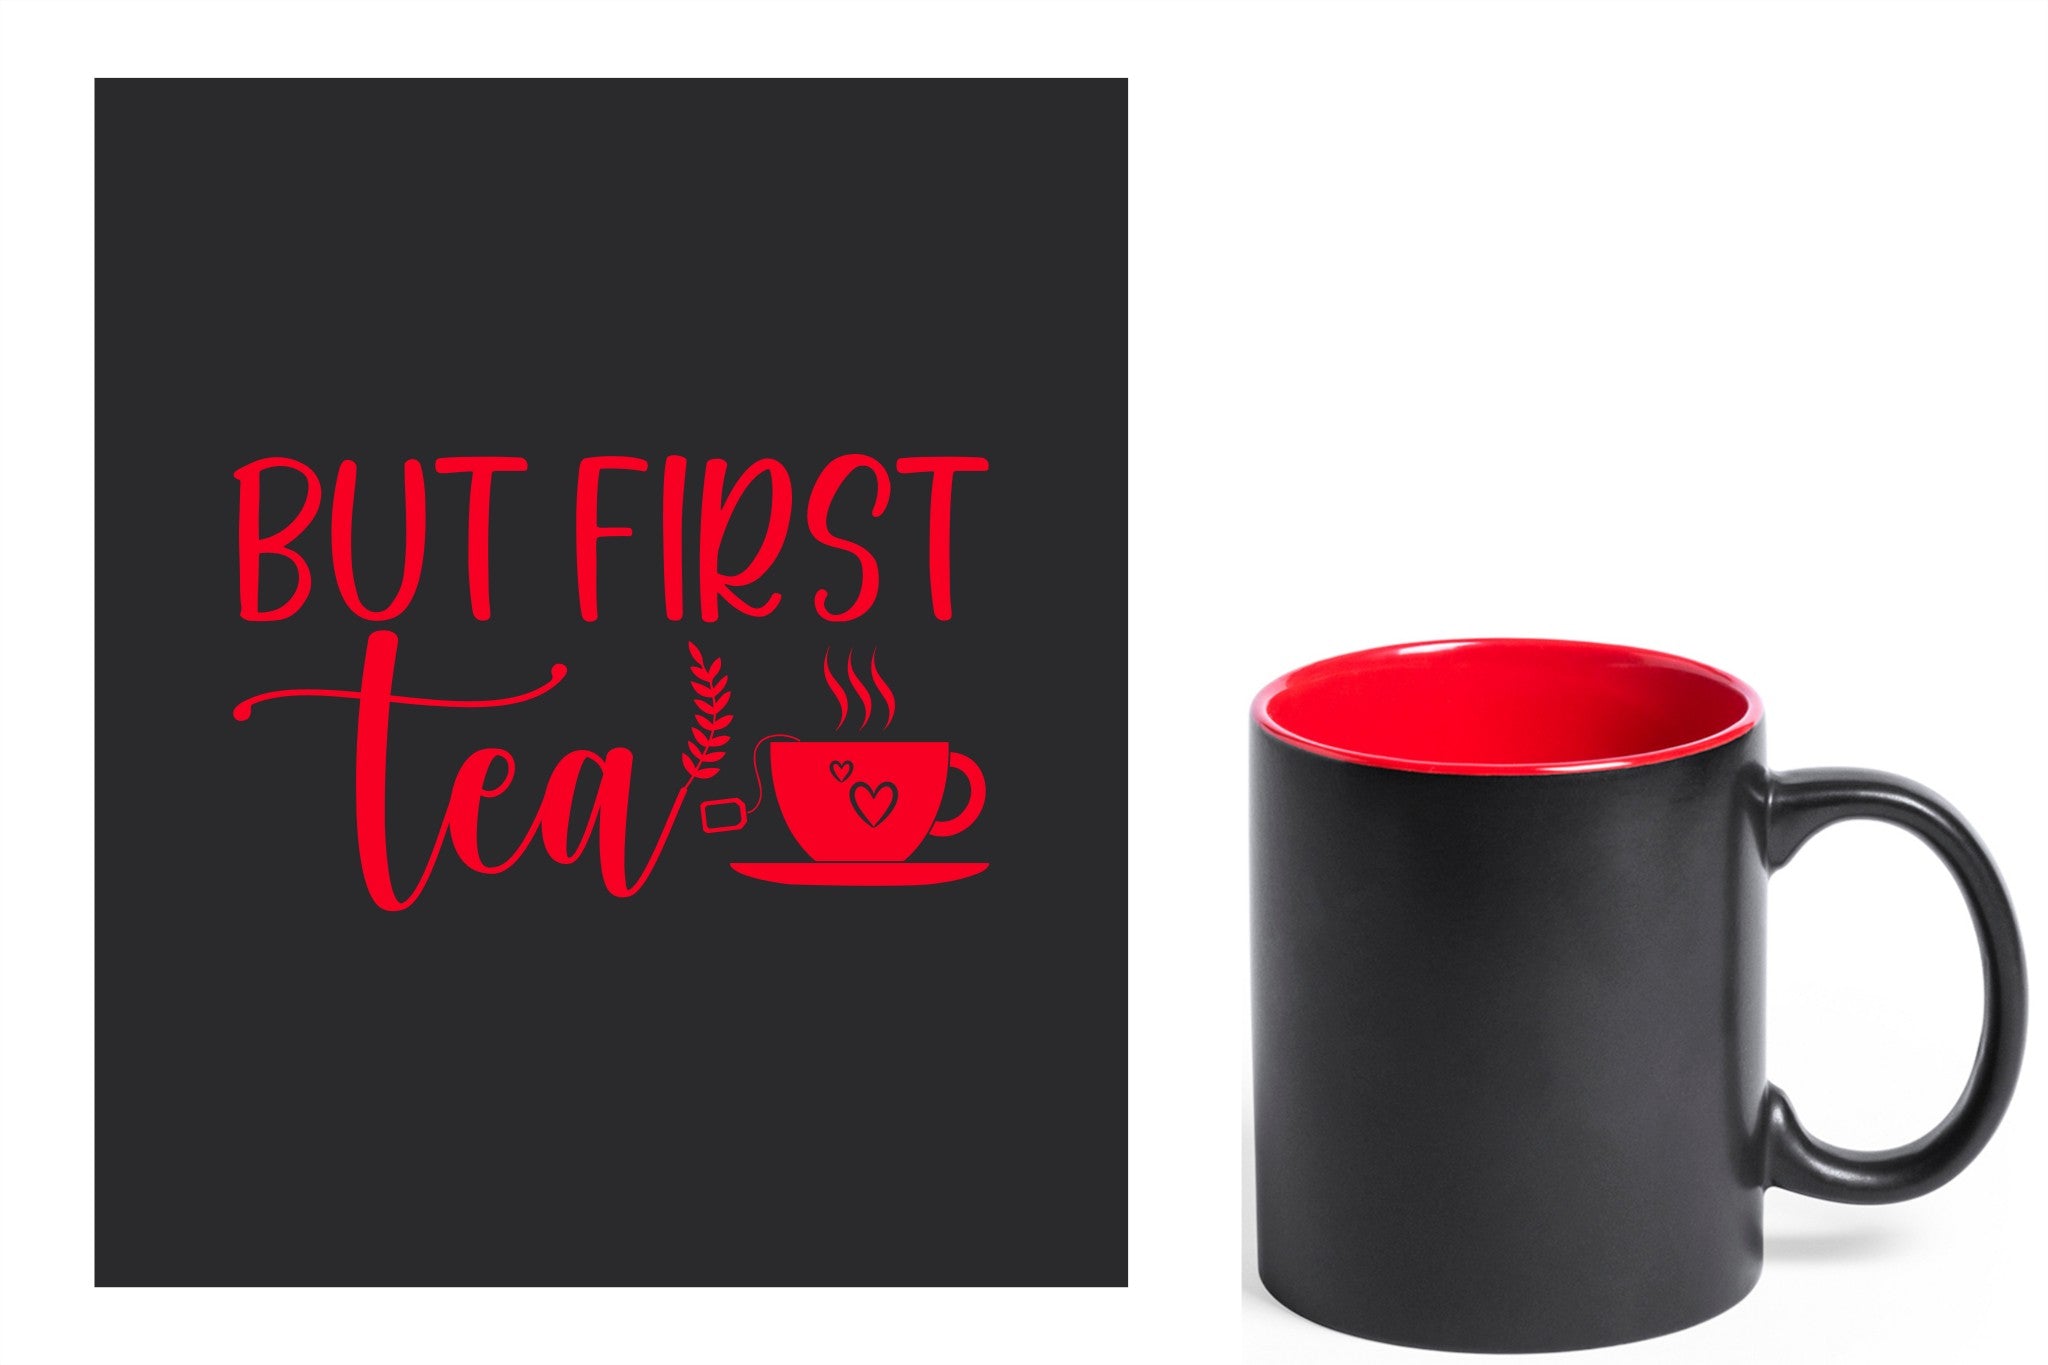 zwarte keramische mok met rode gravure  'But first tea'.